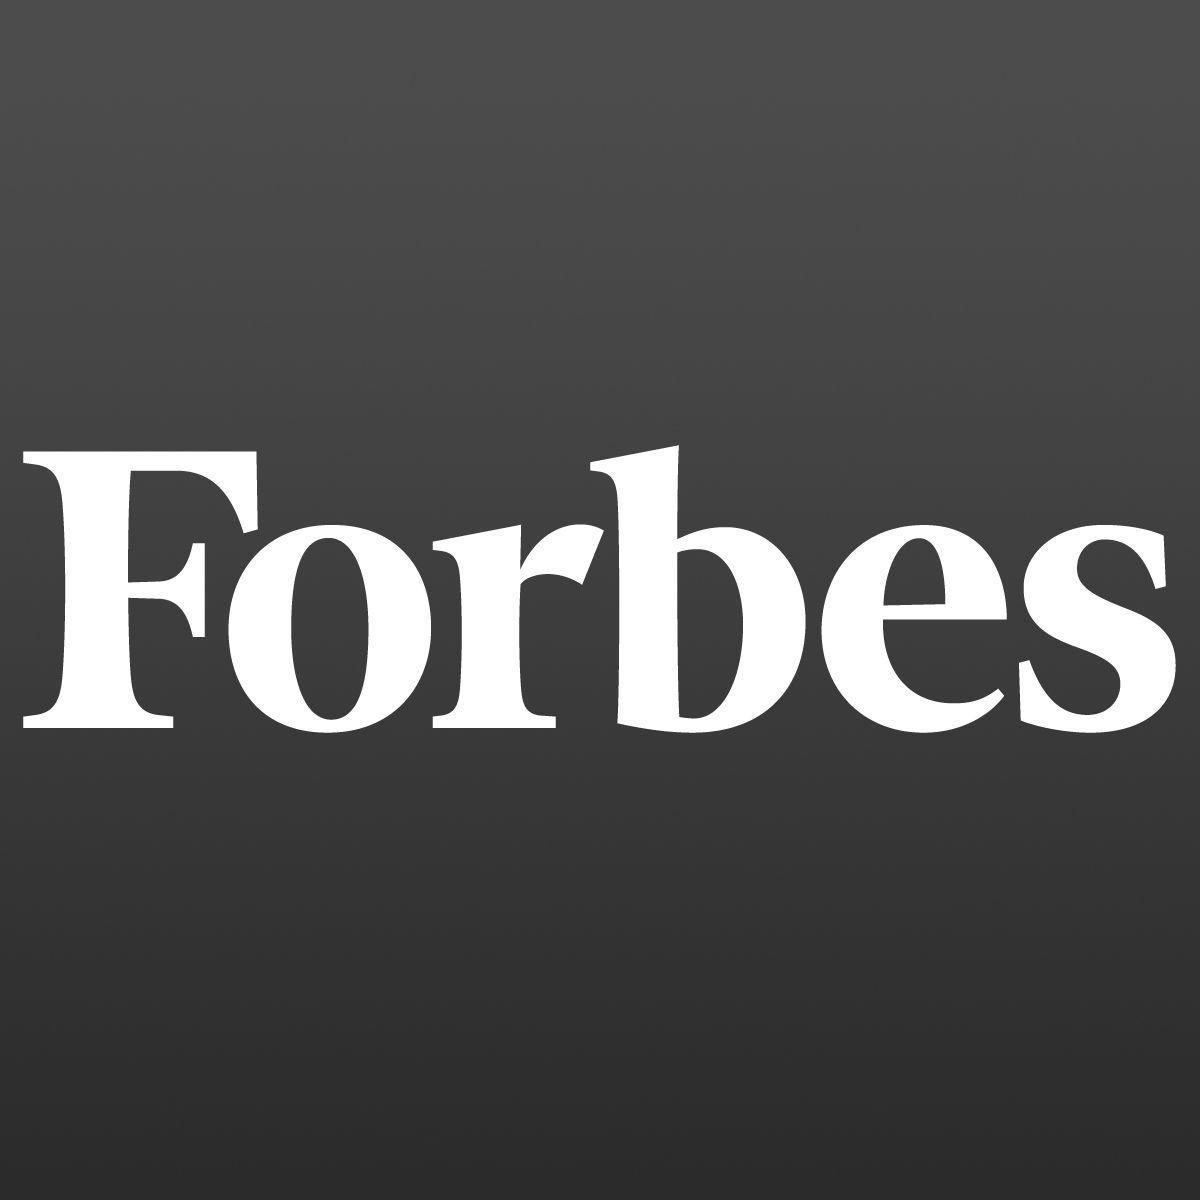 Entrepreneur Magazine Logo - Forbes